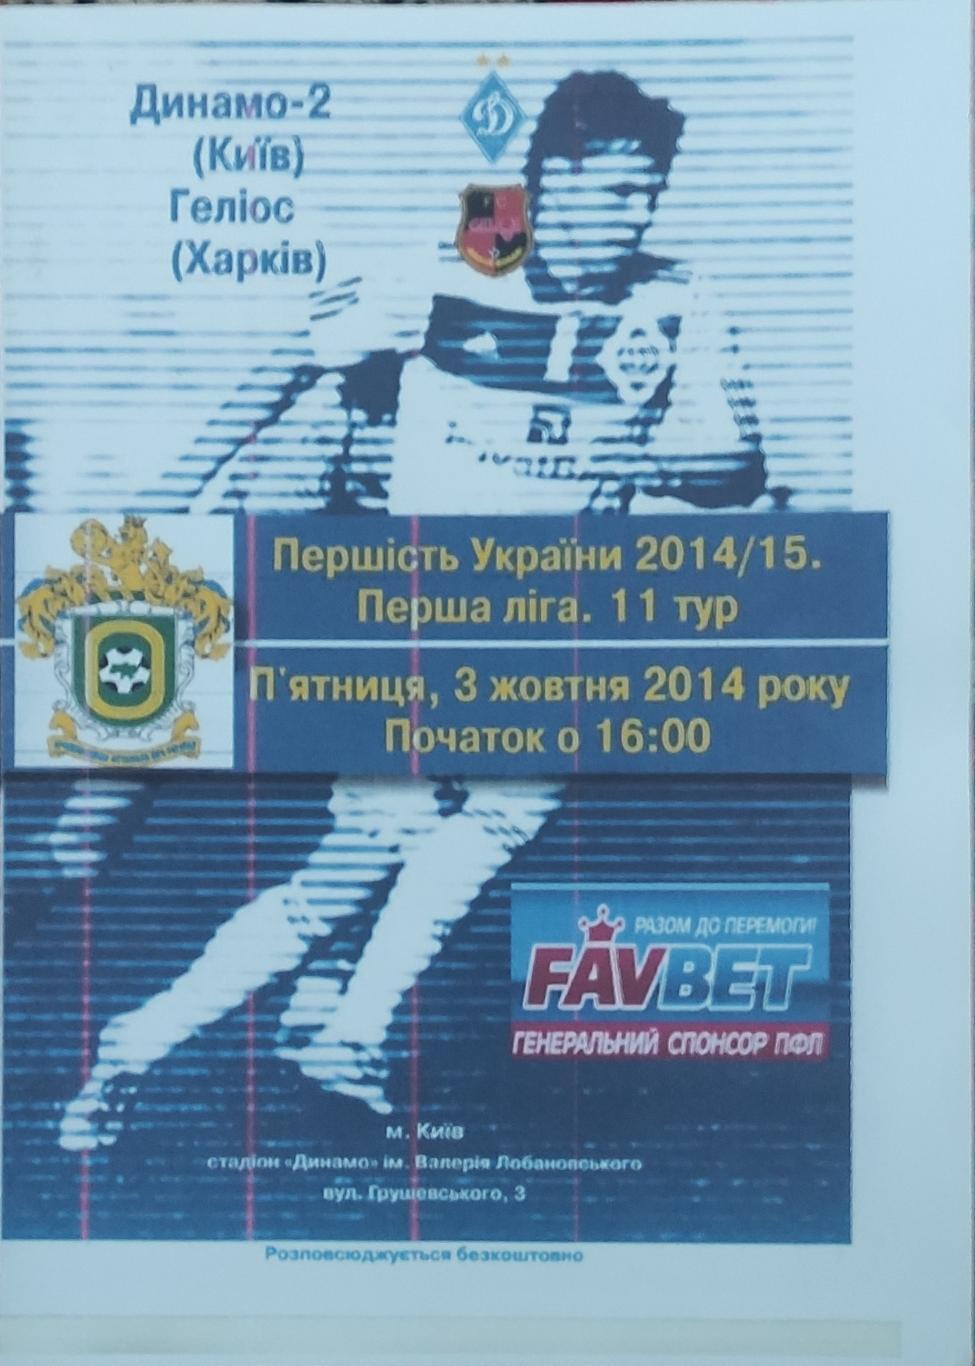 Динамо-2 Киев -Гелиос Харьков .3.10.2014.копия